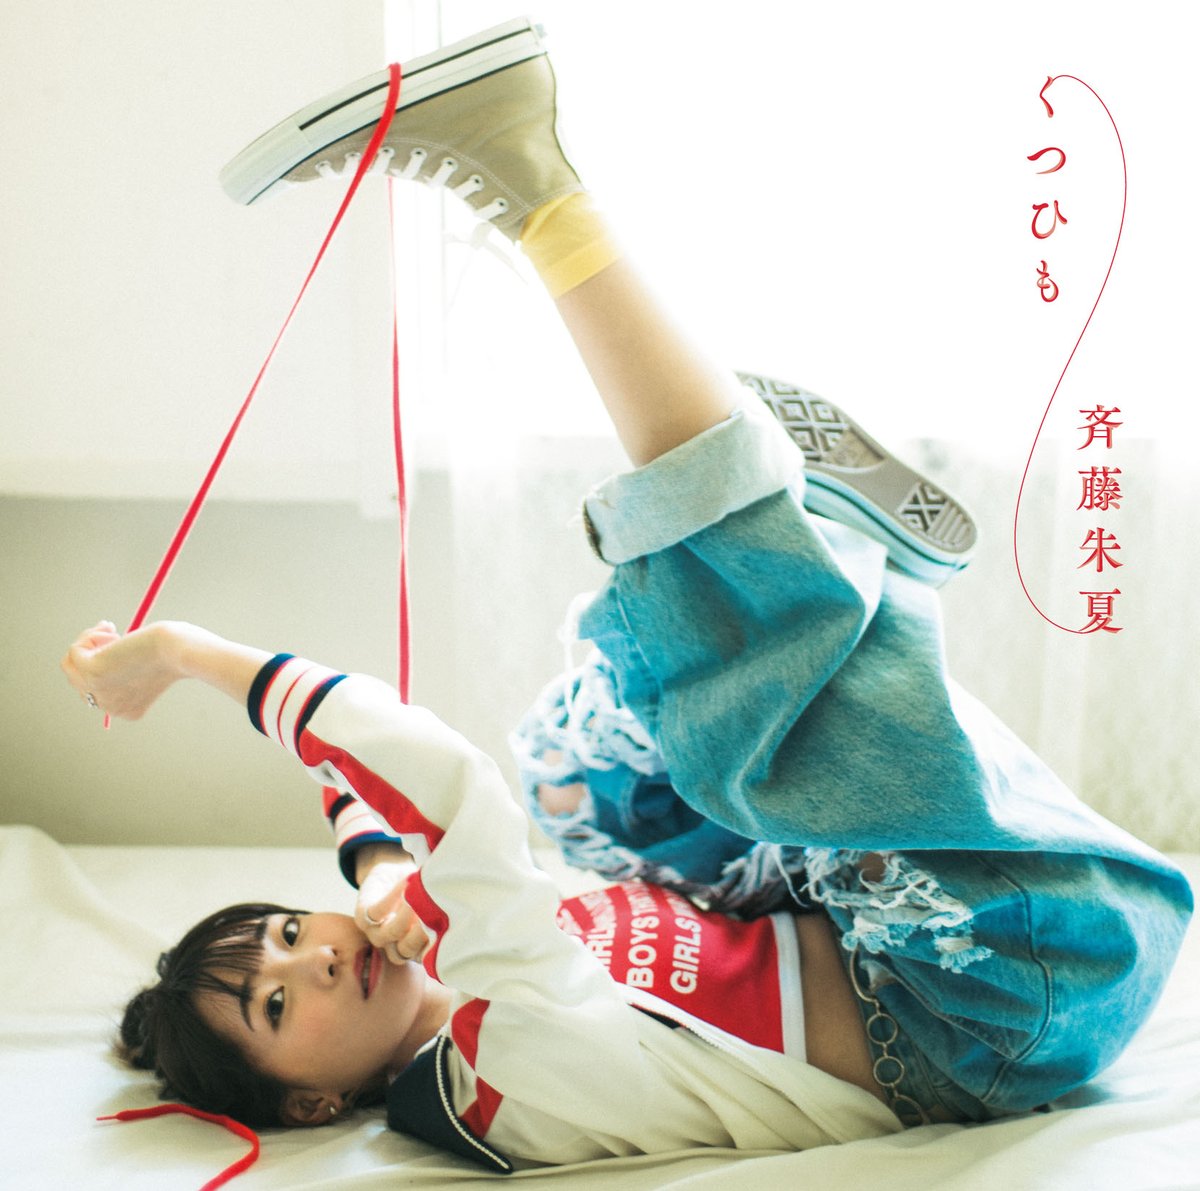 Cover art for『Shuka Saito - Dare yori mo Yowai Hito de Kamawanai』from the release『Kutsuhimo』